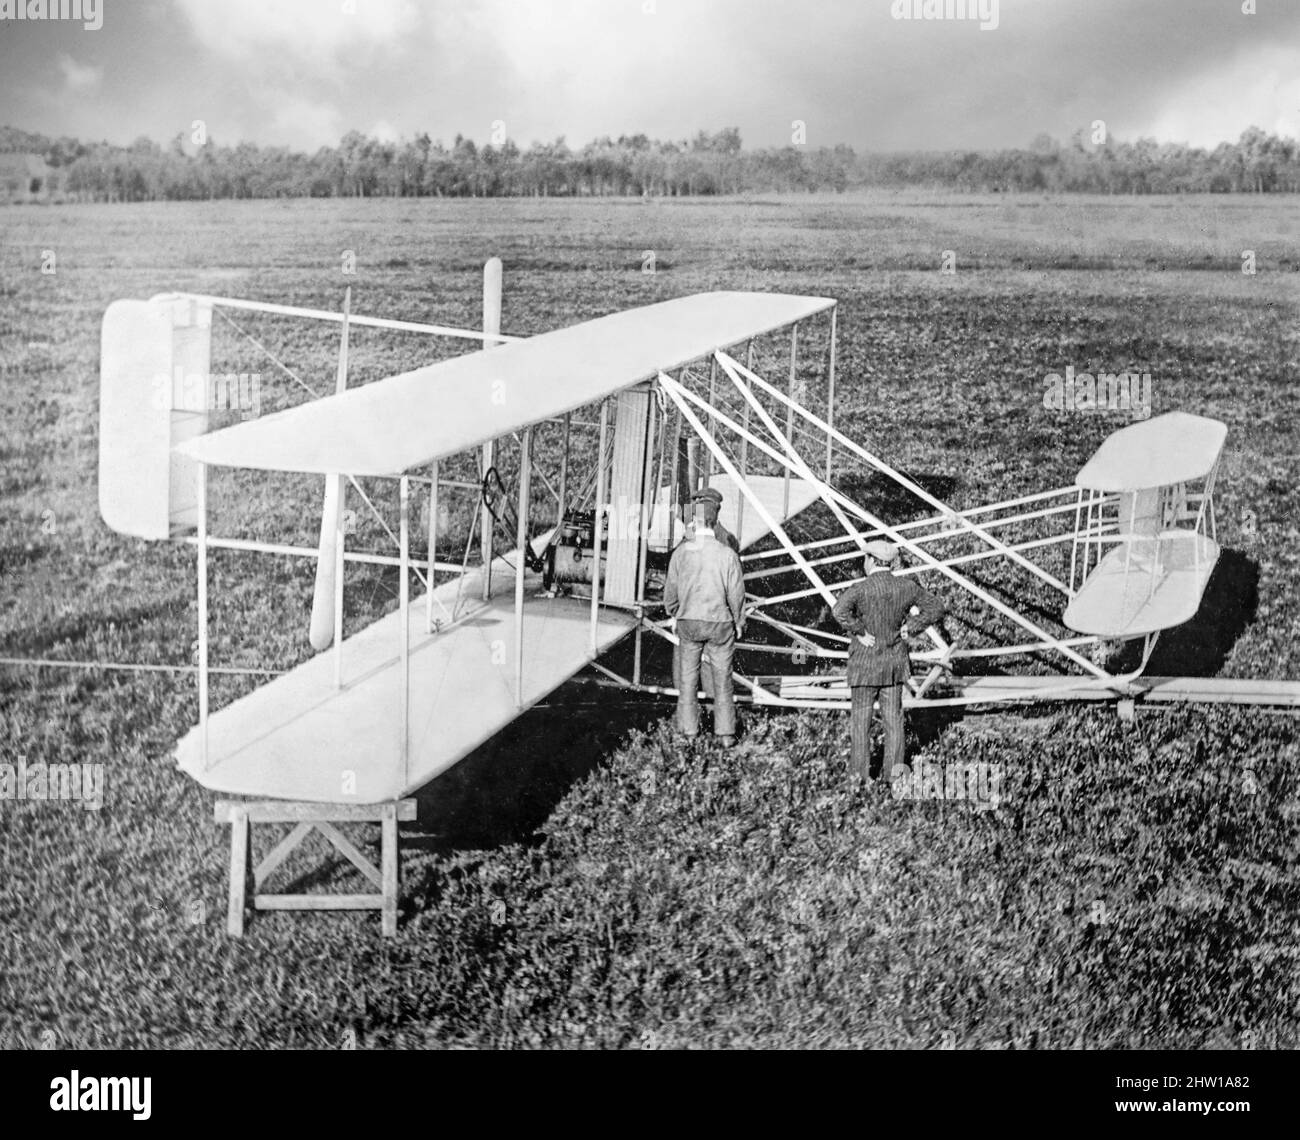 Una fotografía de principios del siglo 20th de la máquina Wright inventada  y desarrollada por los hermanos Wright, Orville y Wilbur Wright, los  pioneros de la aviación estadounidense generalmente acreditados con el